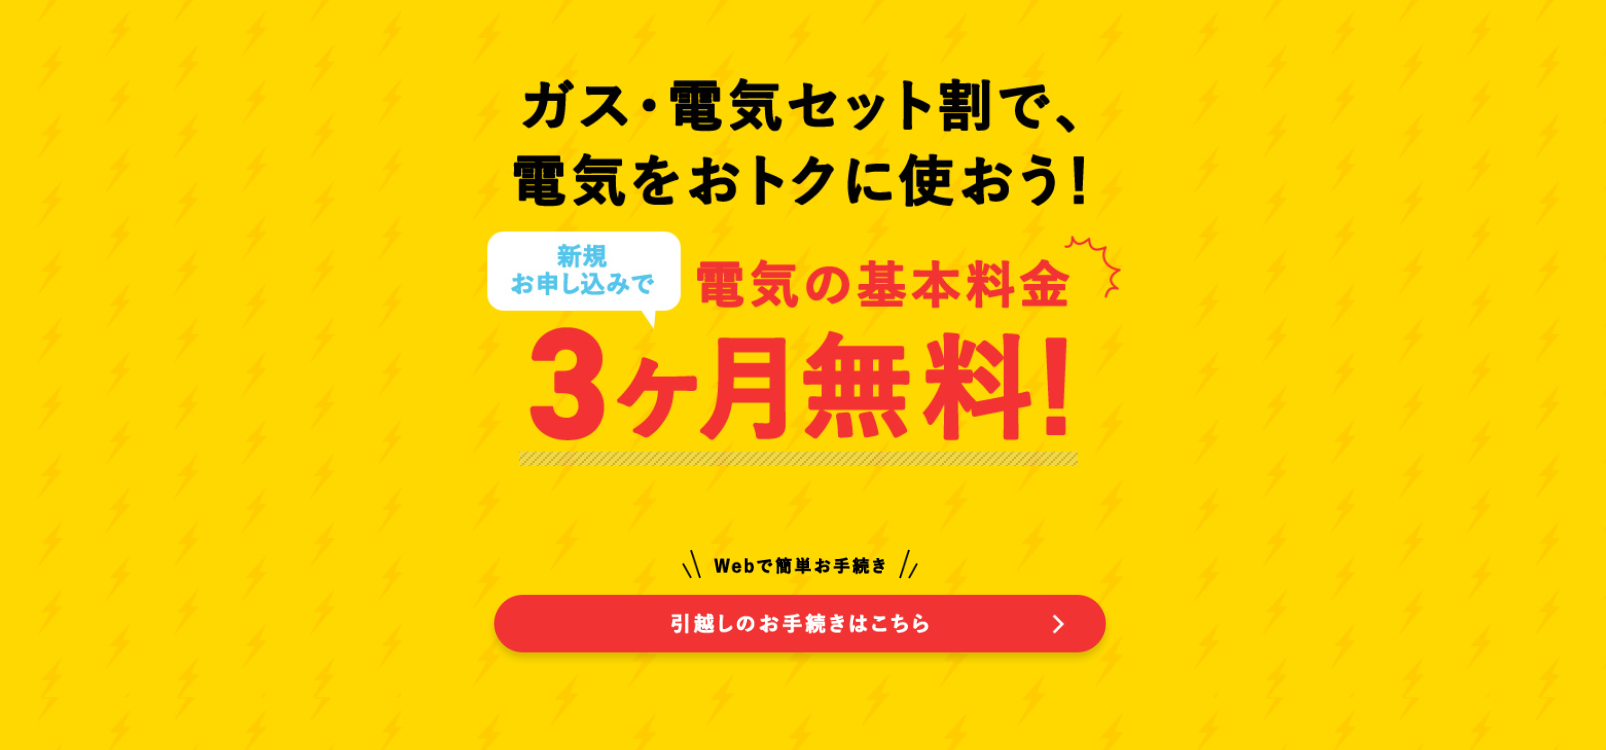 東京ガスの基本料金3か月無料特典